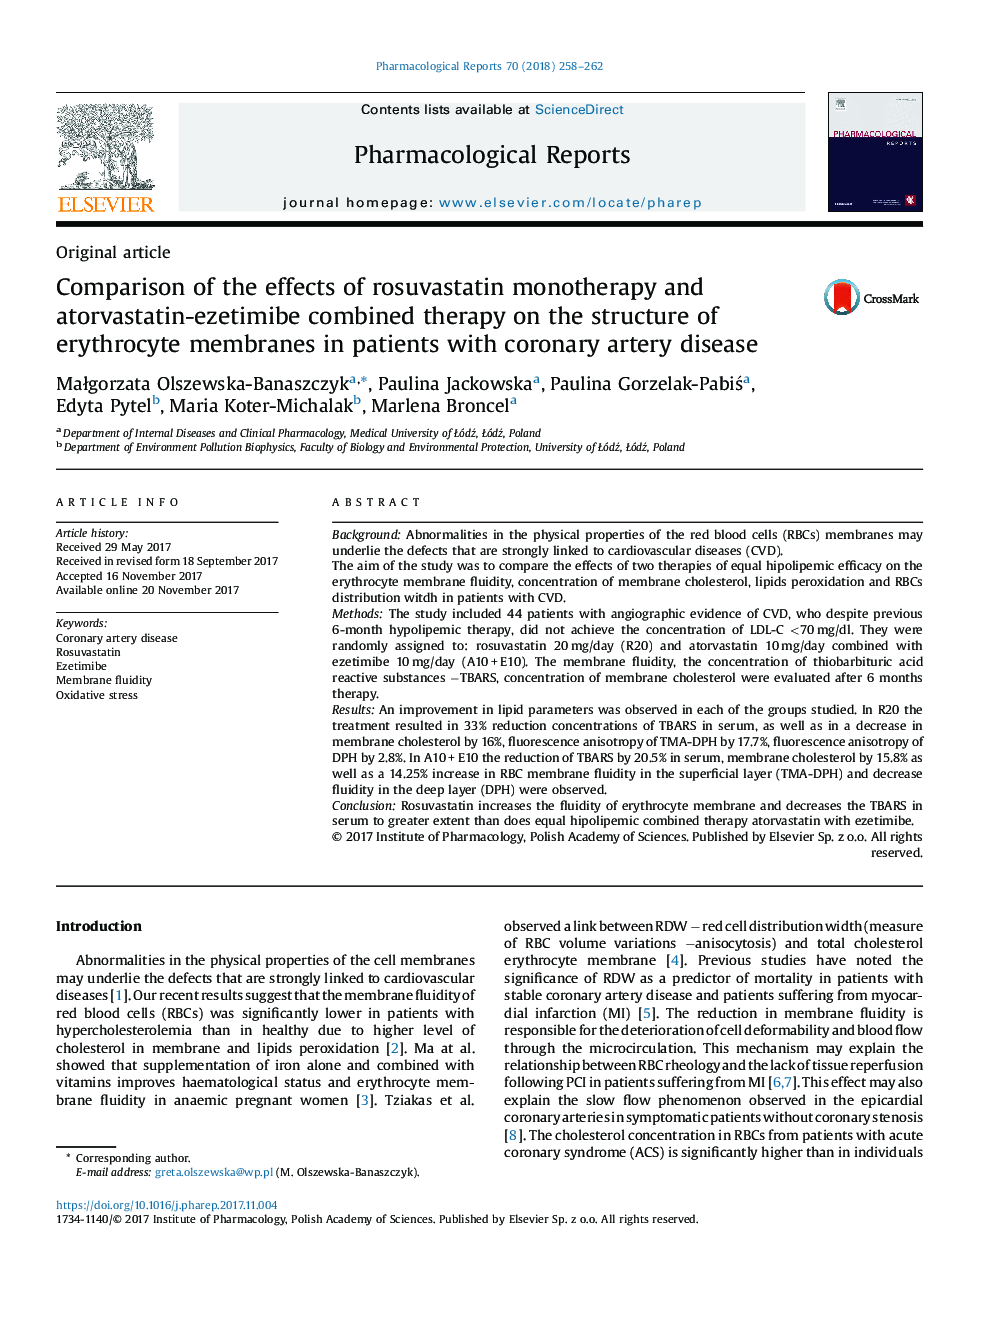 مقایسه اثرات مونوتراپی روستوواستاتین و درمان ترکیبی آتورواستاتین ایزتیمایب با ساختار غشای اریتروسیت در بیماران مبتلا به بیماری عروق کرونر 